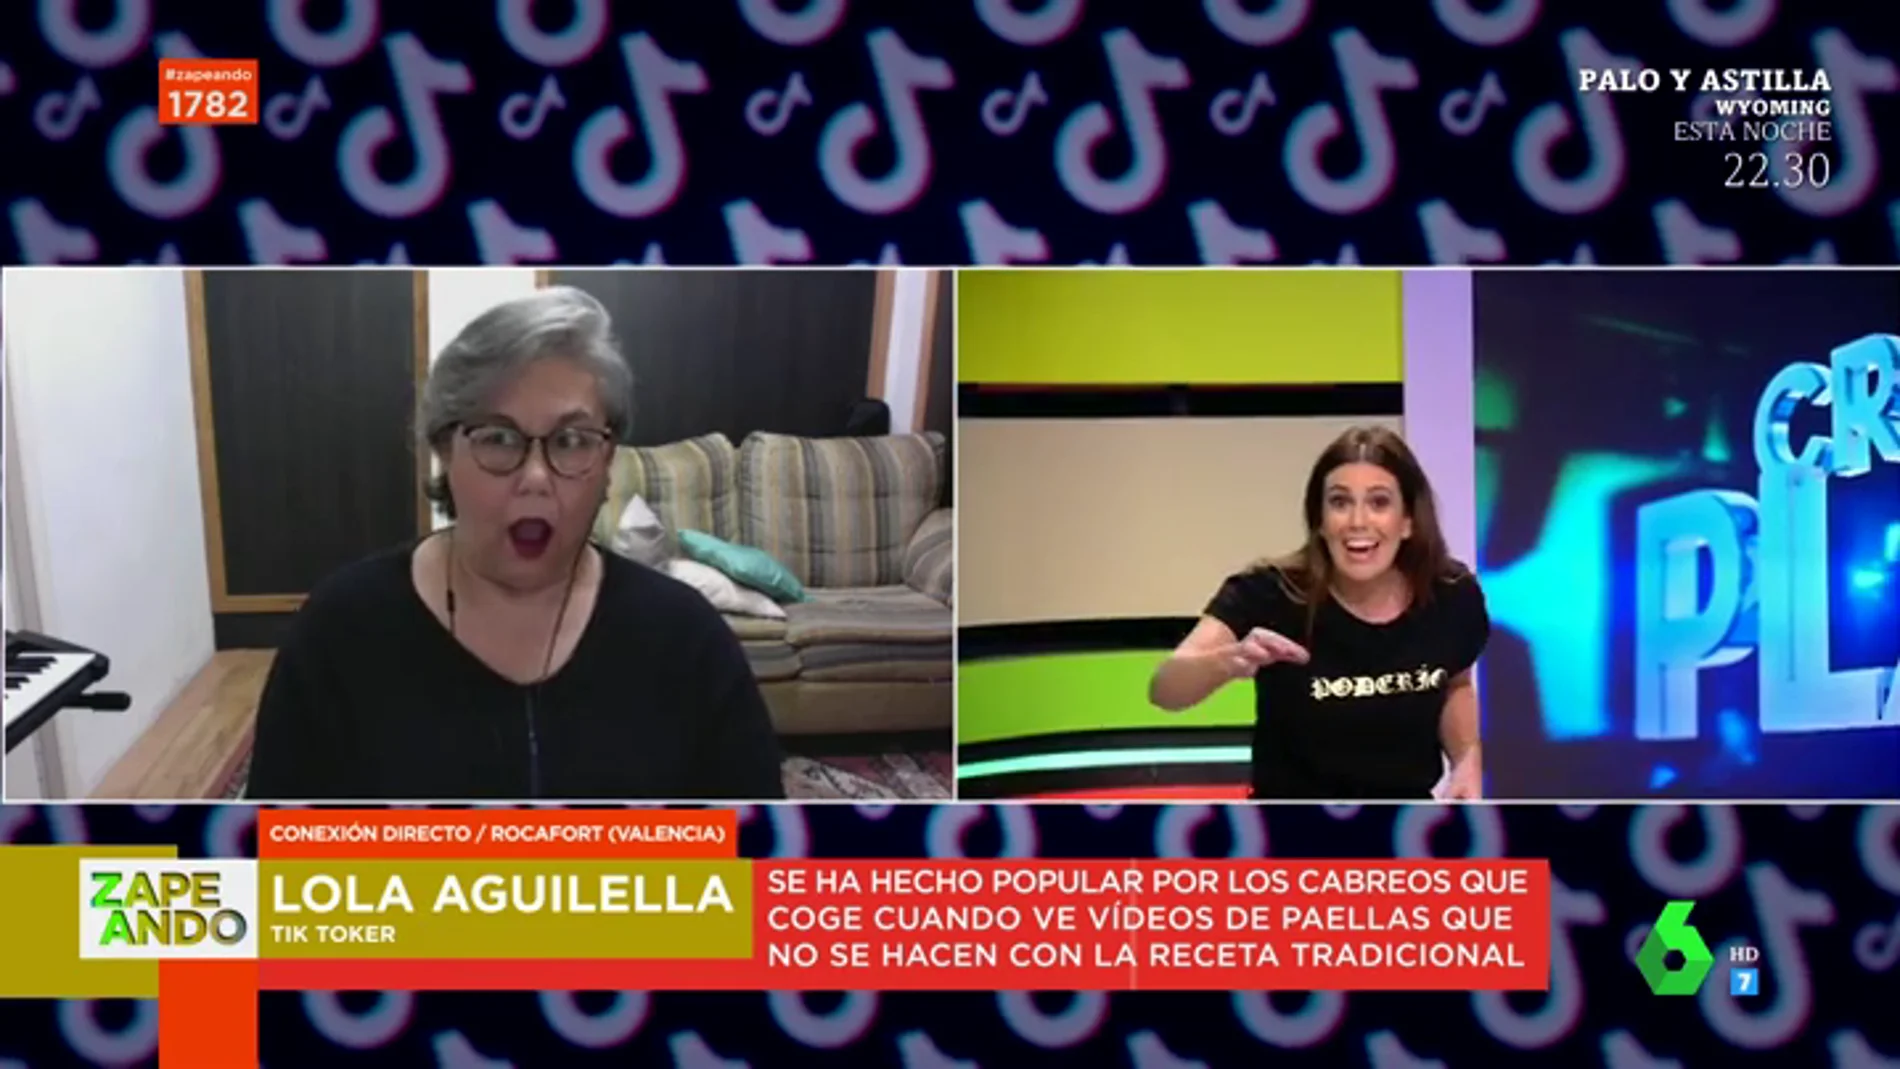 La reacción de la valenciana 'madreindignada' al escuchar lo que Cristina Plaza echa a su paella: "¡Vacía toda la nevera ya!"